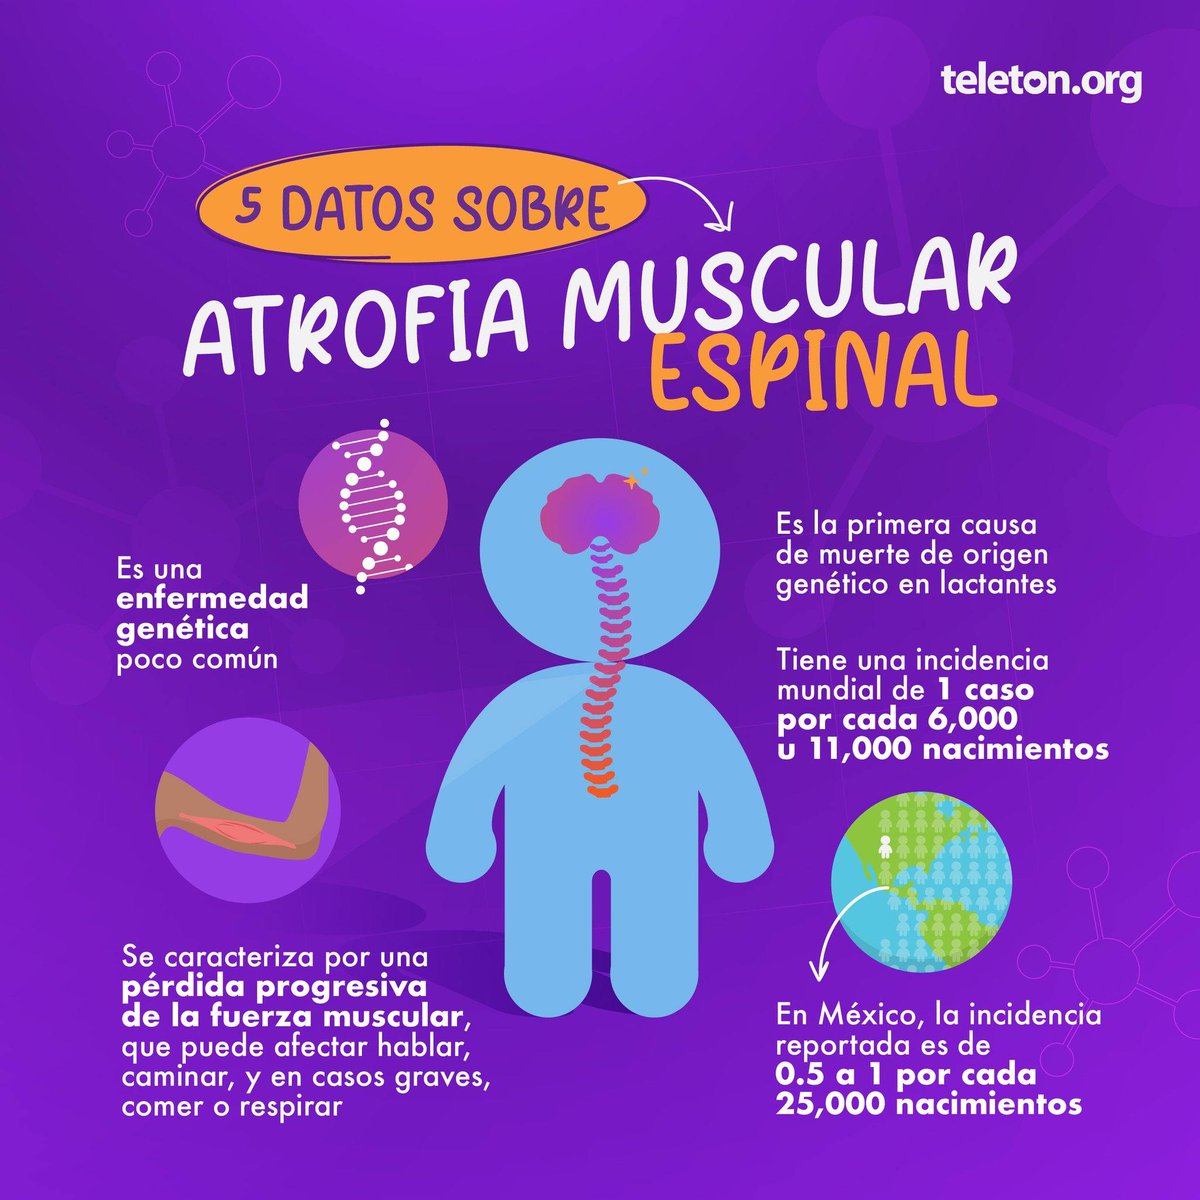 ¿Sabes qué es la atrofia muscular espinal (AME)? Conoce más con estos 5 datos. 🖐🏻 Infórmate en teleton.org #AtrofiaMuscularEspinal